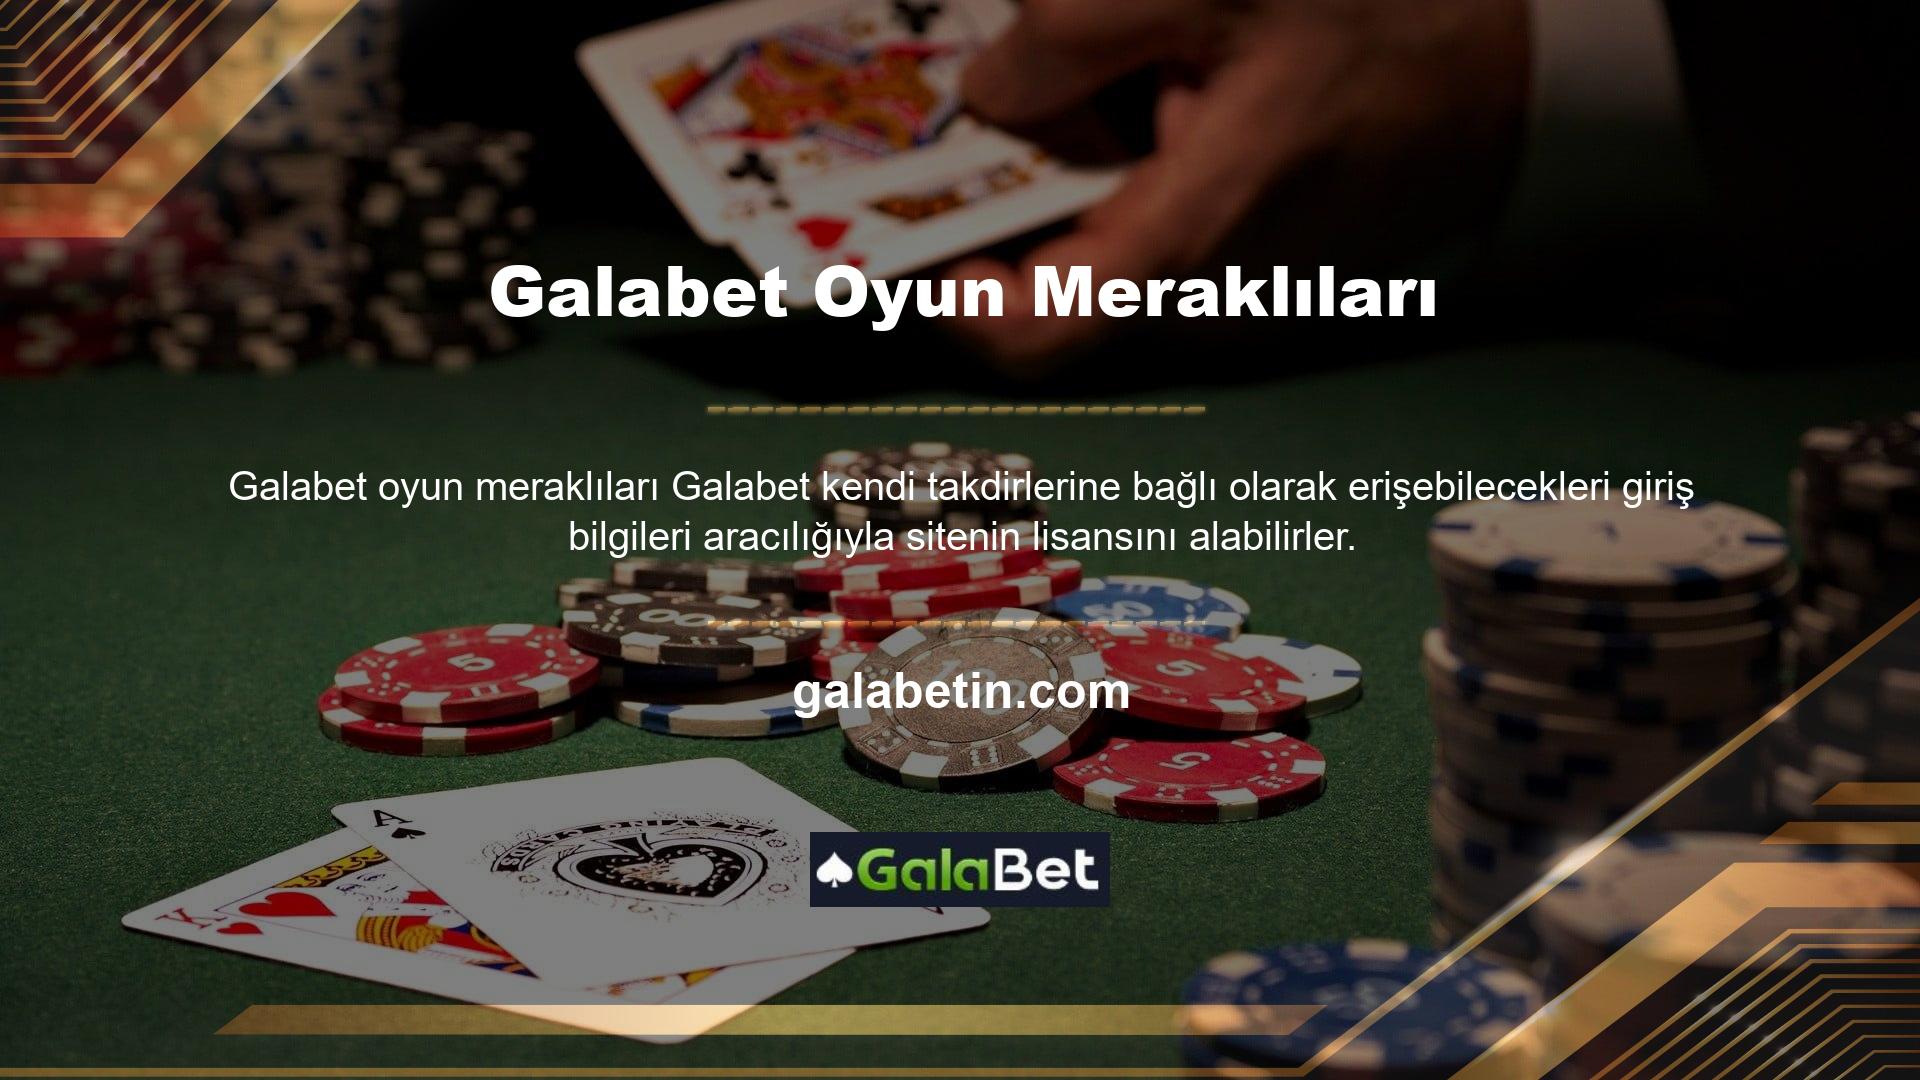 Galabet, müşterilerinin bahis, canlı bahis (gürültü), casino veya çevrimiçi casino, sanal sporlar, poker, Türkiye pokeri ve kazı kazan kartları gibi çeşitli bahis seçenekleri arasından seçim yapmasına olanak tanır